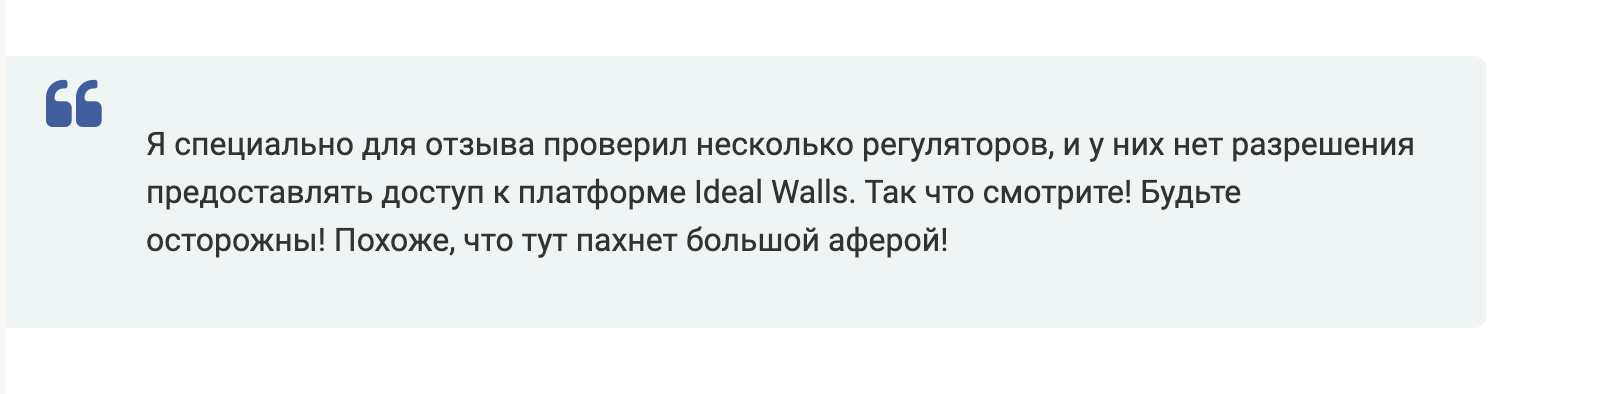 Ideal Walls — новый лжеброкер от старых аферистов